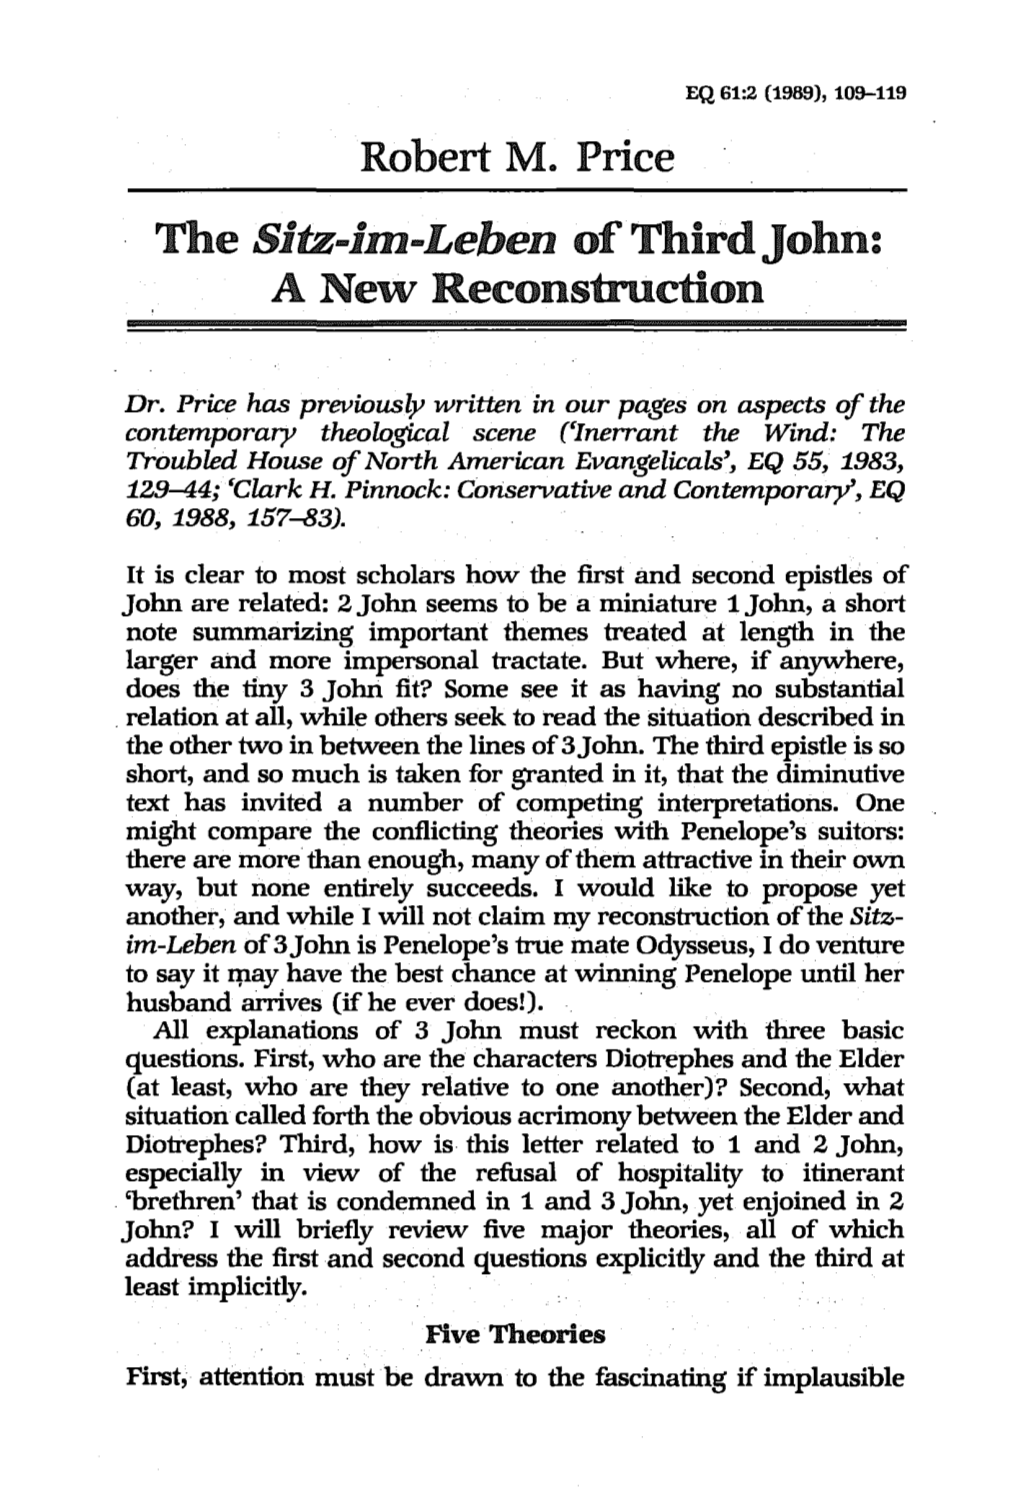 The Sitz-Im-Leben of Third John: a New Reconstruction